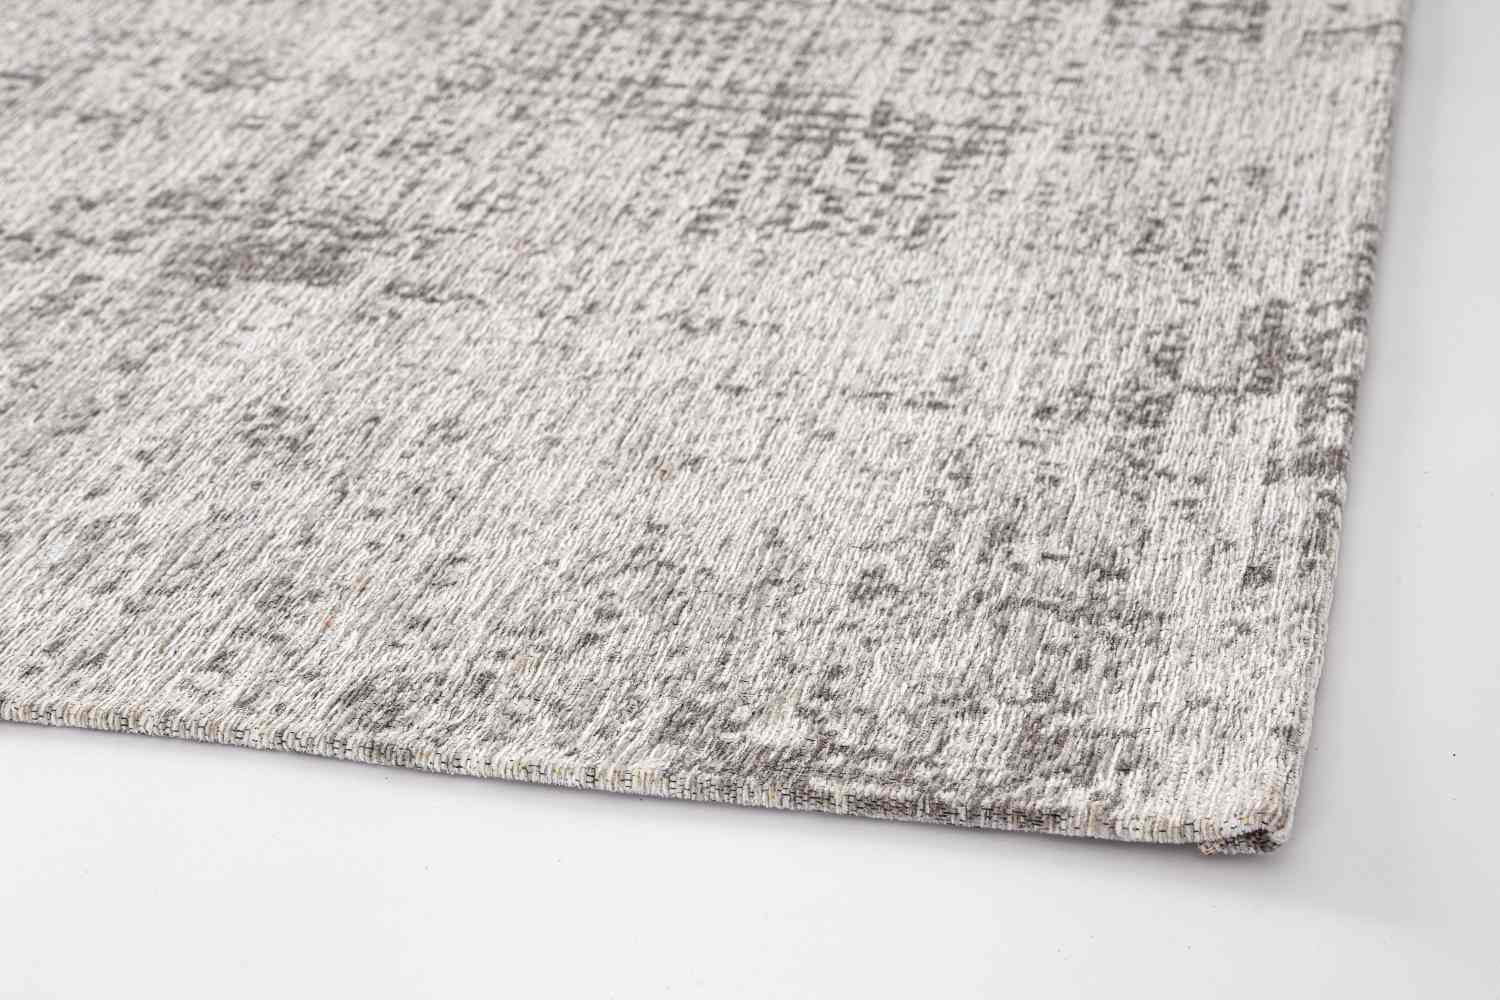 Der Teppich Suri überzeugt mit seinem modernen Design. Gefertigt wurde die Vorderseite aus 50% Chenille, 30% Polyester und 20% Baumwolle, die Rückseite ist aus Latex. Der Teppich besitzt eine silbernen Farbton und die Maße von 200x290 cm.